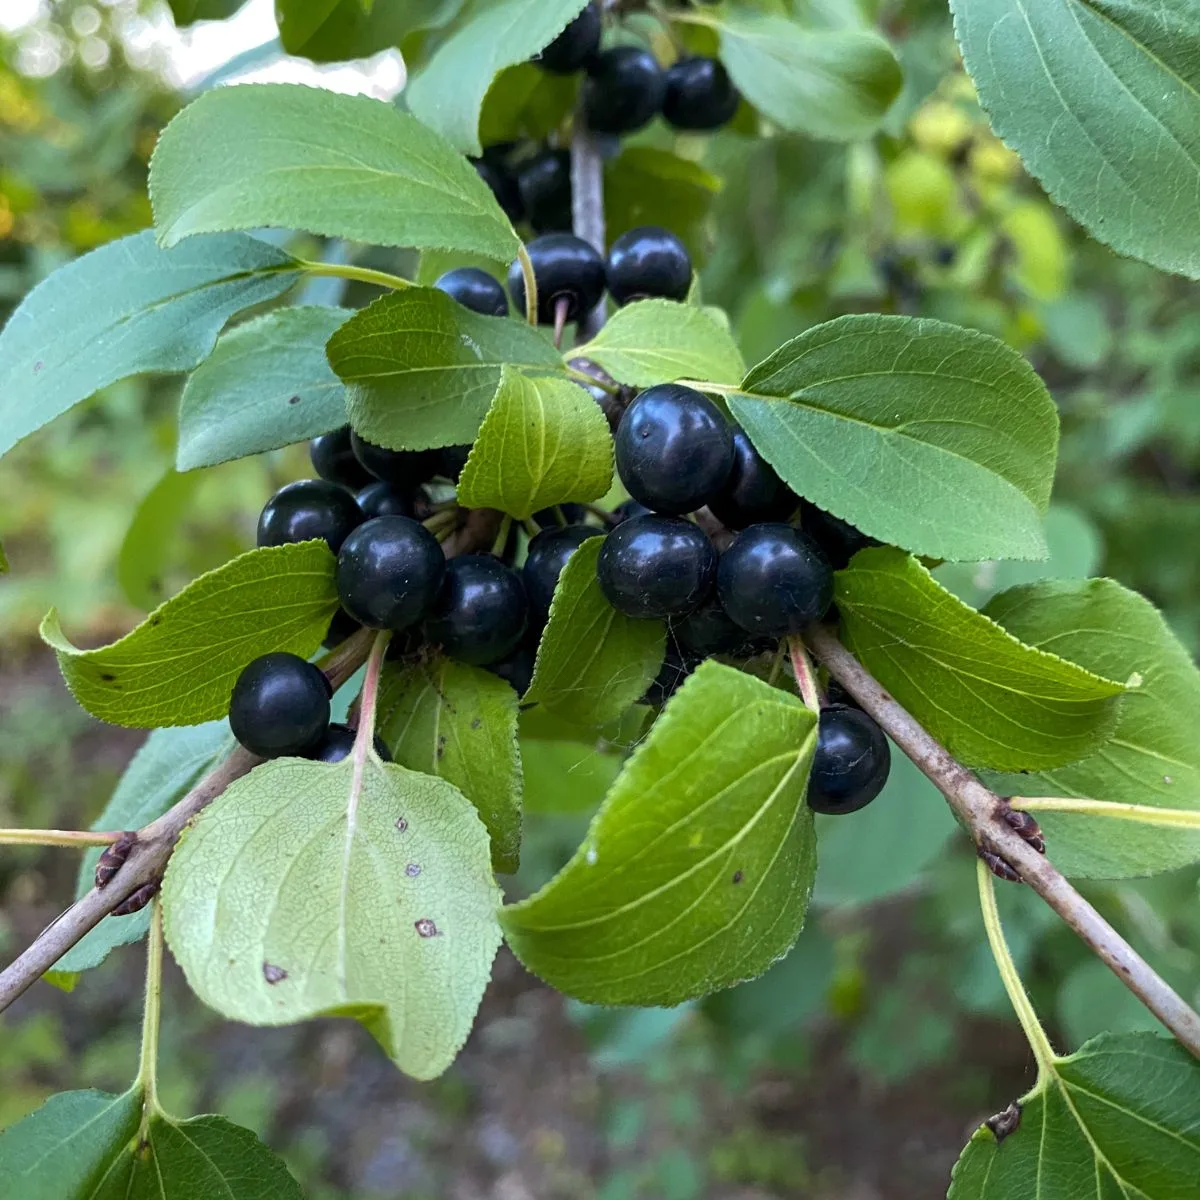 Common Buckthorn berries.